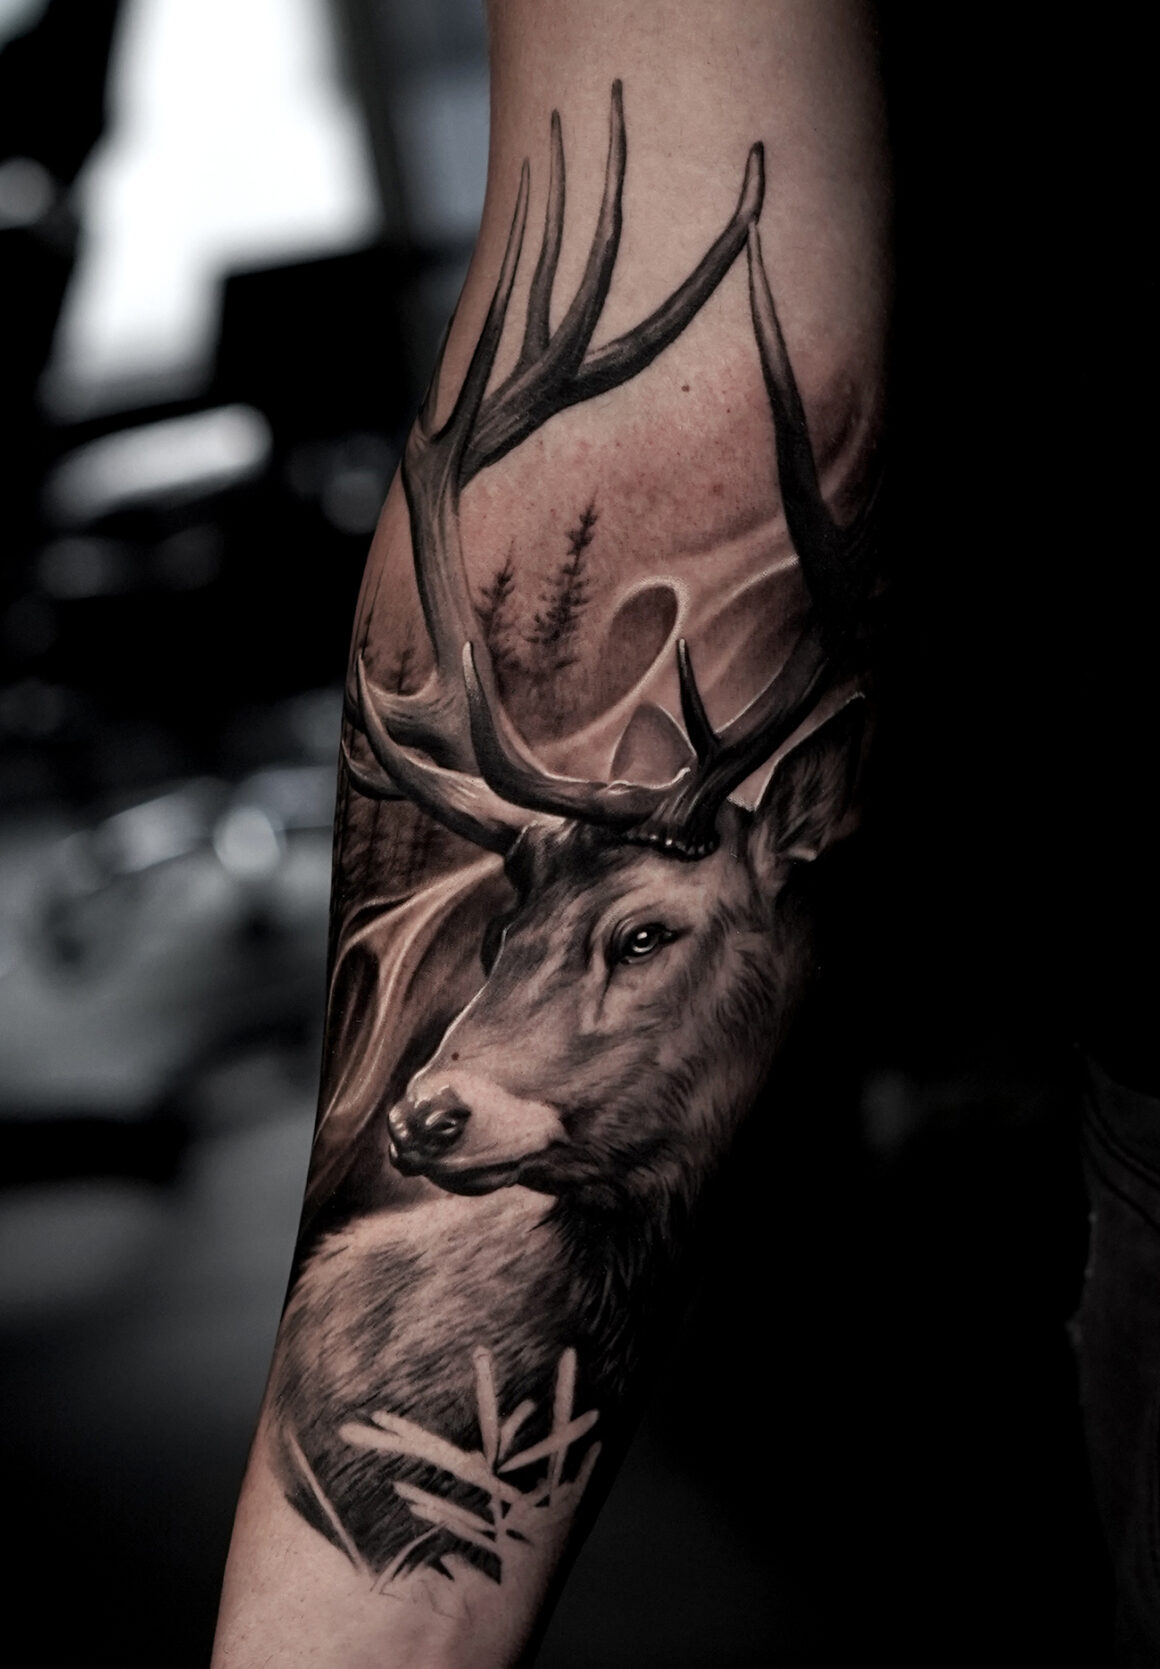 Tattoo by Sebastian, German Skull Tattoo, @skulltattoosbadvilbel